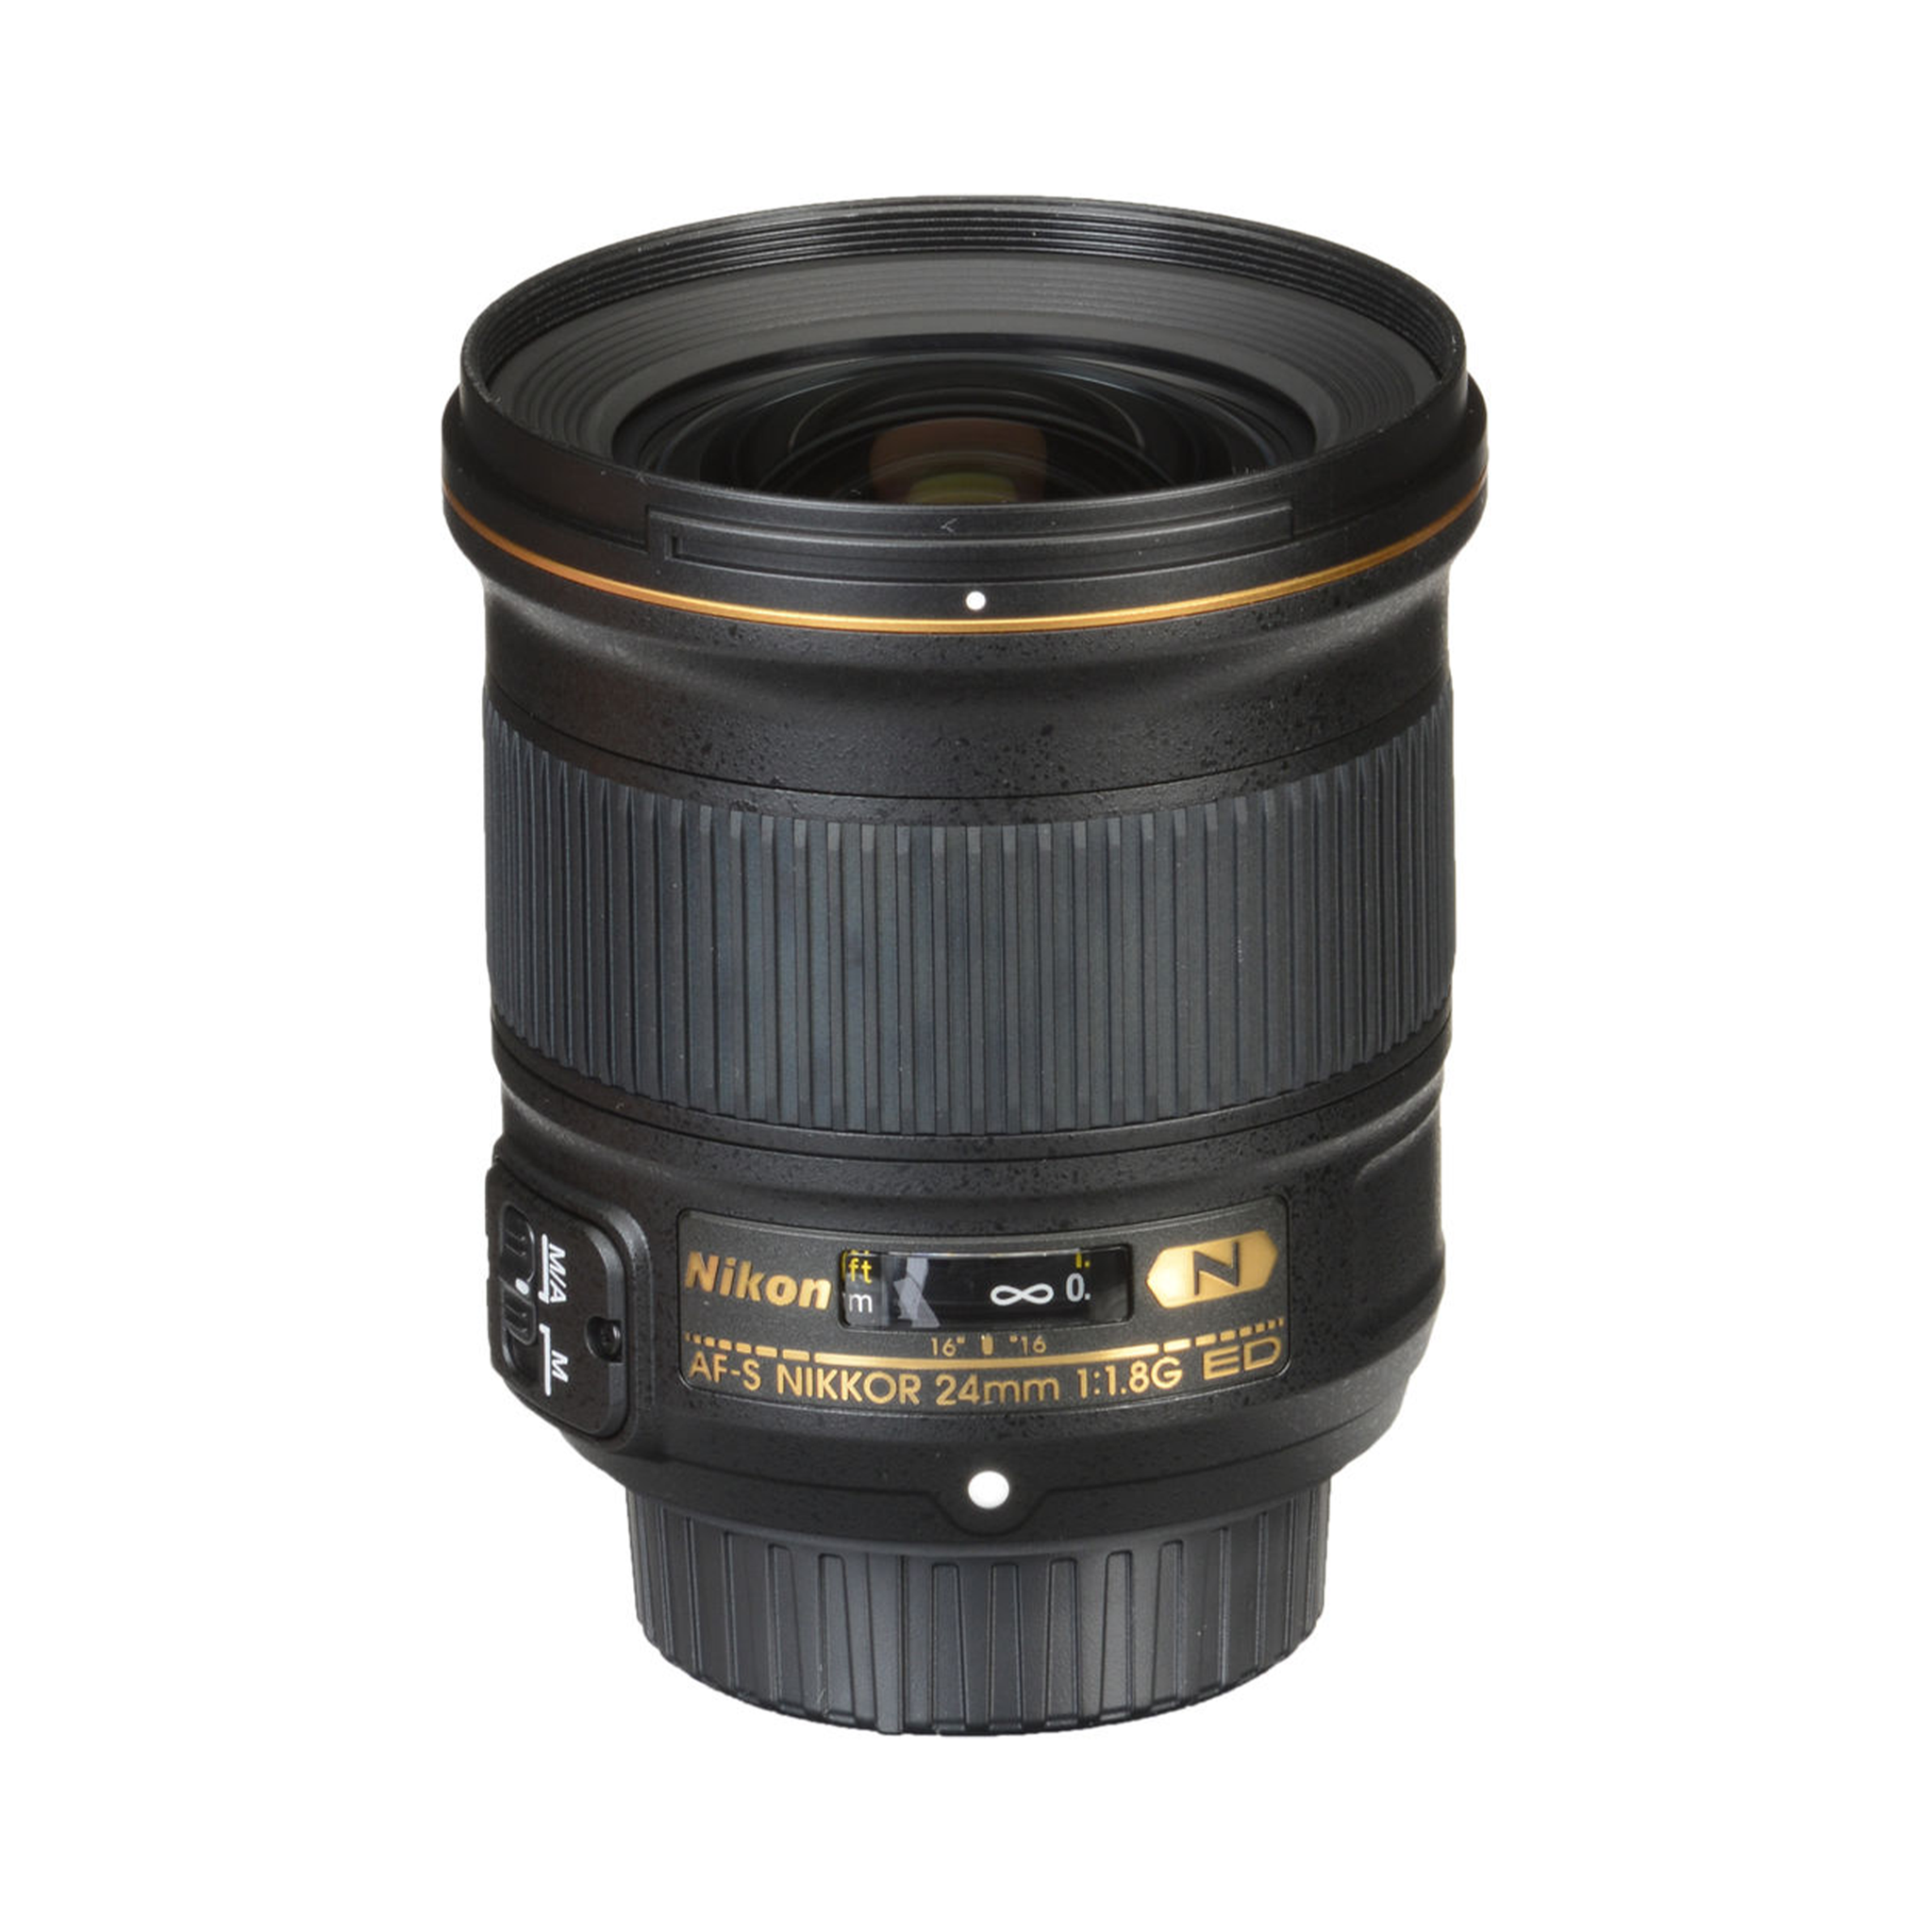 Nikon AF-S NIKKOR 24mm f/1.8G ED lens-Camera Lenses-futuromic